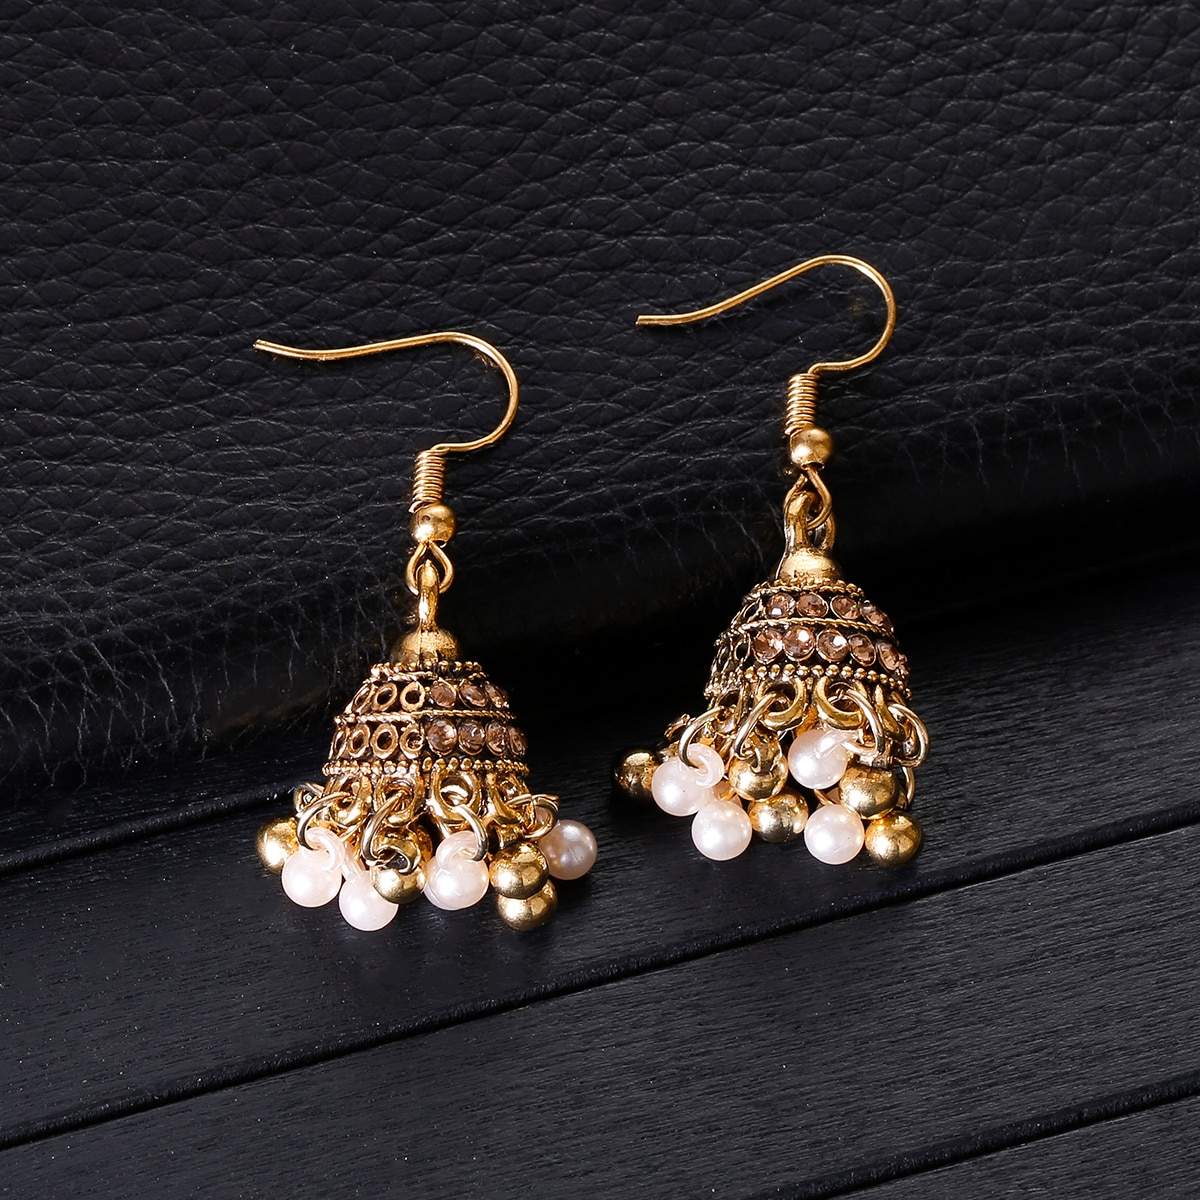 Retro-Classic-Small-Bell-CZ-Earrings-Women39s-Ethnic-Pearl-Tassel-Earrings-Piercing-Wedding-Jewelry--1005004294998889-2